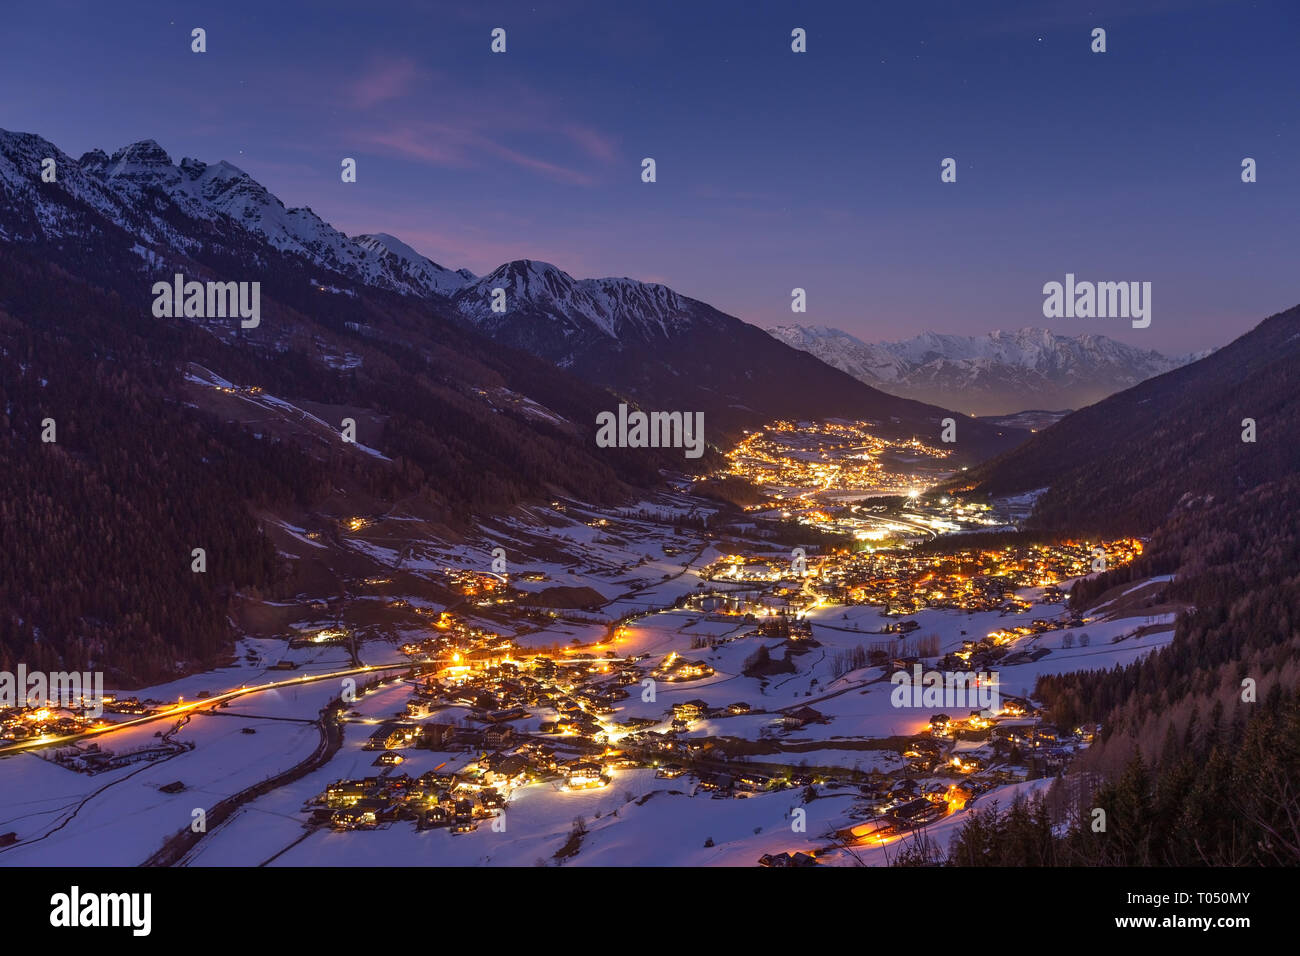 Stubai valley. Stubaital. Night landscape, winter season. Town lights.  Austrian Alps. Austria. Europe. Stock Photo